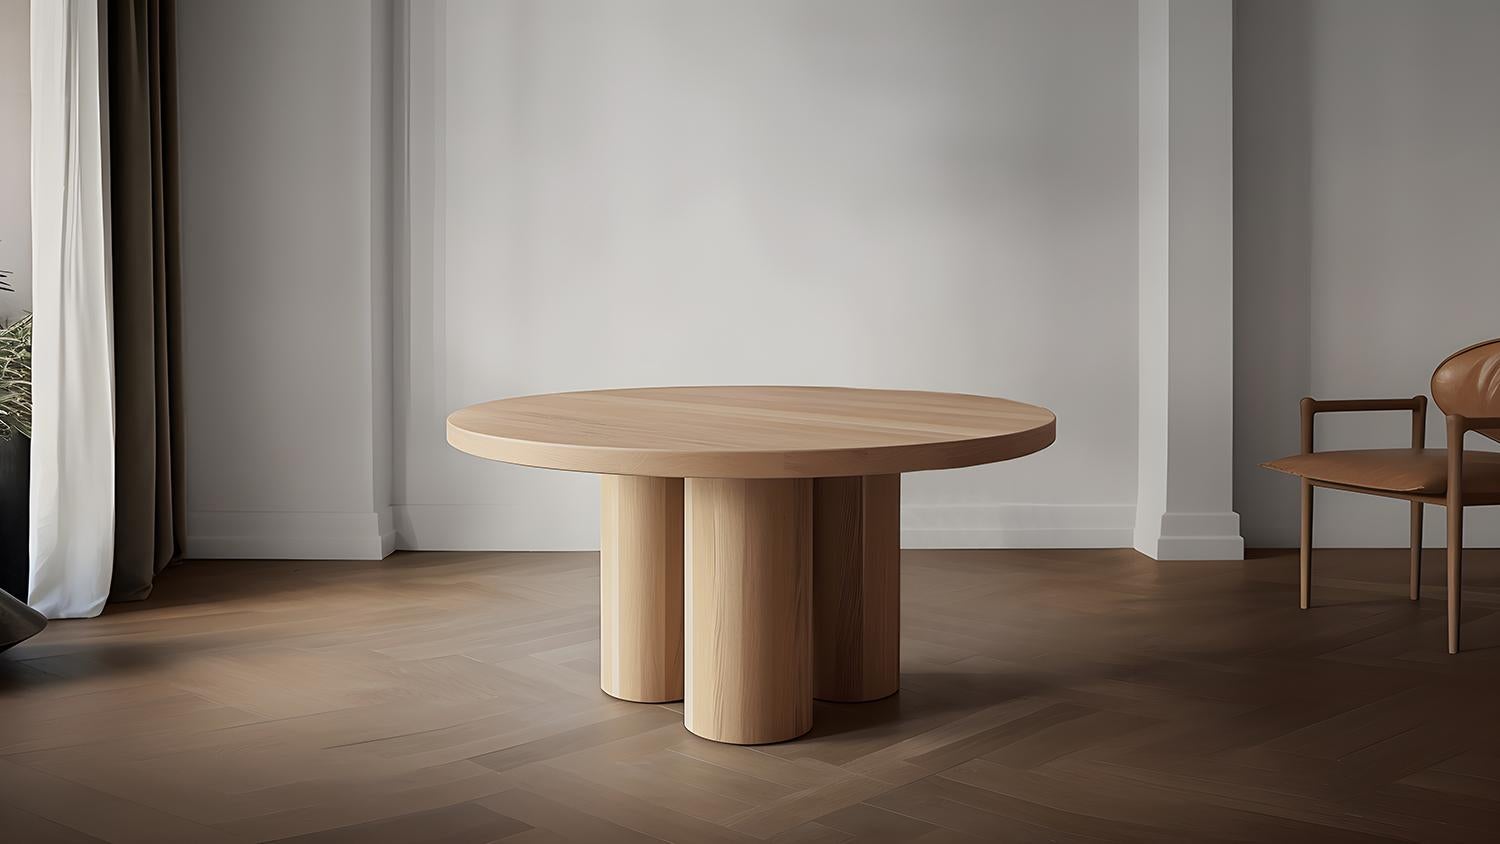 Table de salle à manger circulaire Podio

L'équipe de design de NONO présente une table de salle à manger qui respire l'élégance et la modernité. Cette pièce repose sur un ensemble de colonnes cylindriques, qui constituent une base solide pour le